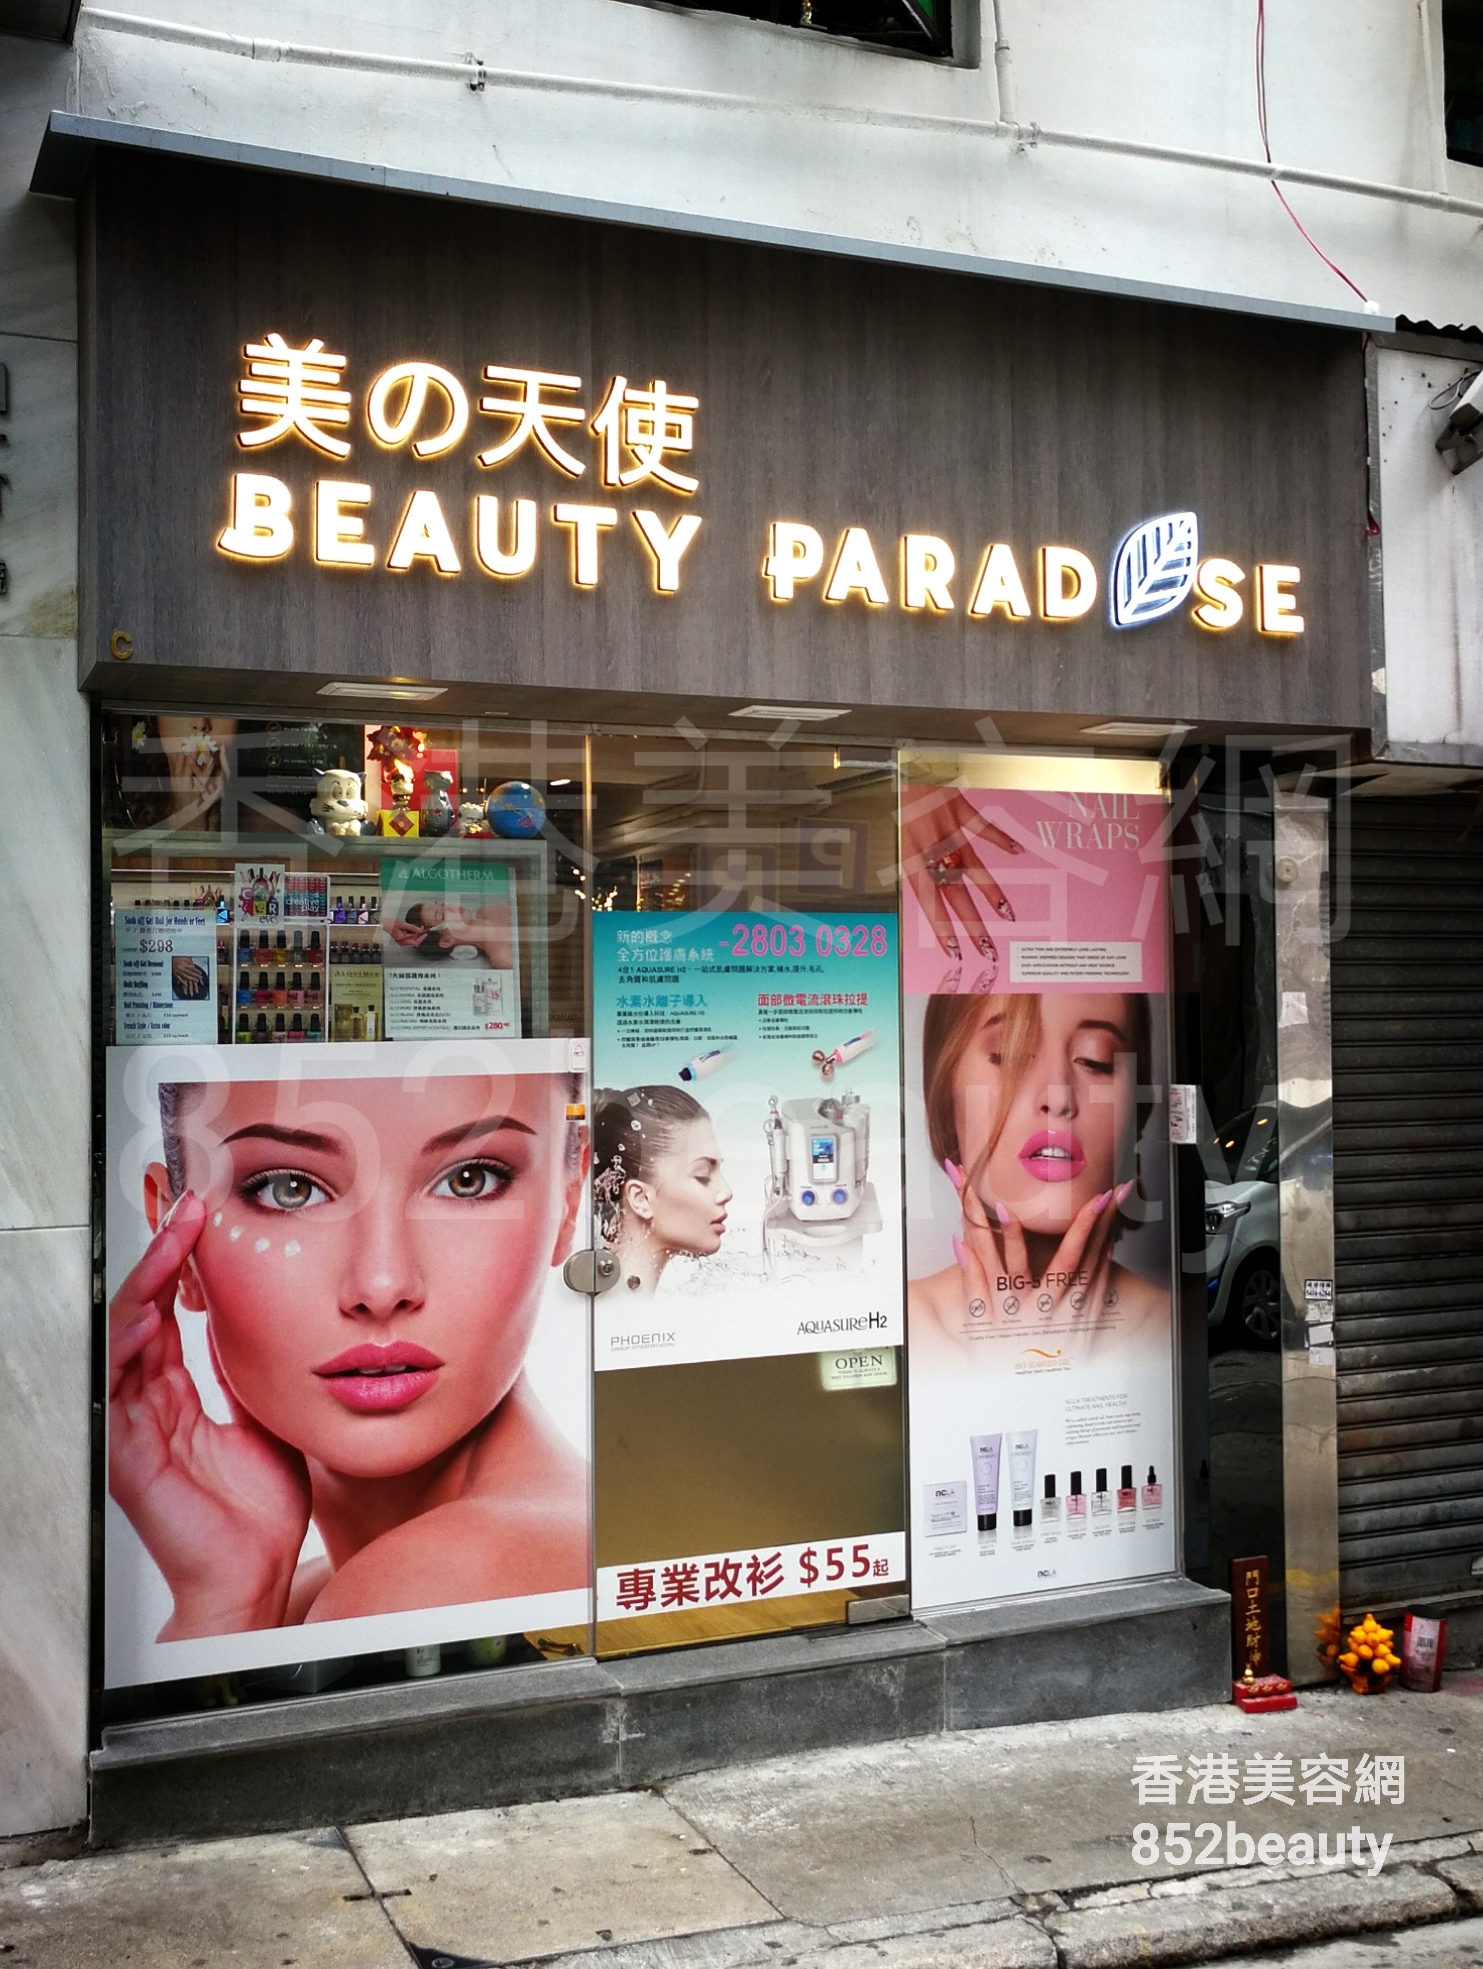 美容院 Beauty Salon: 美之天使 BEAUTY PARADSE 